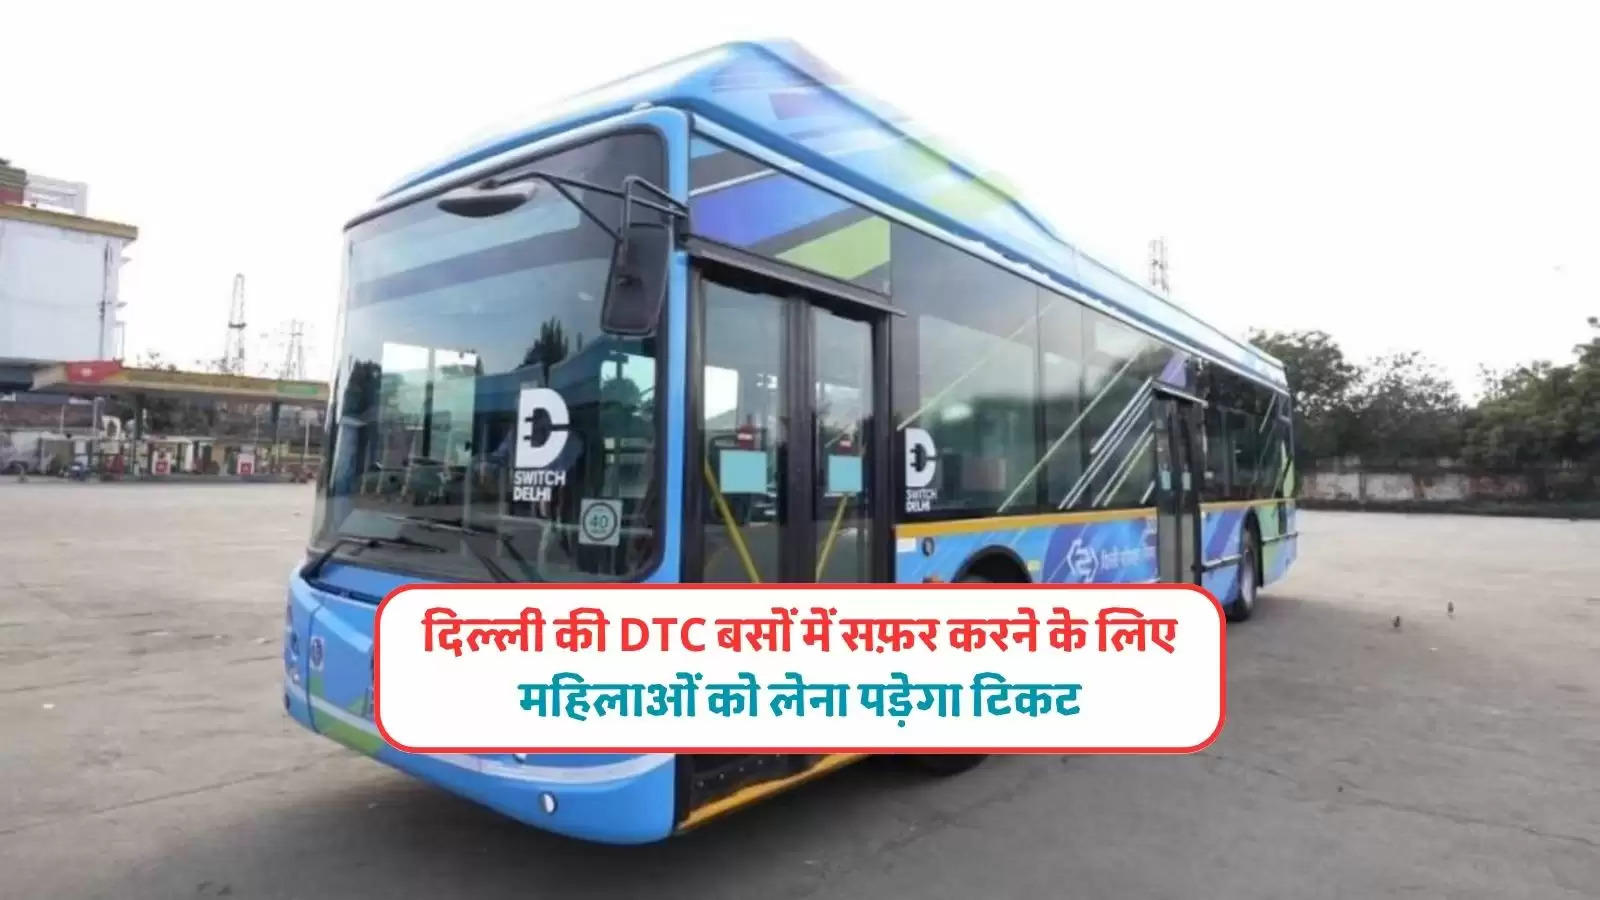 delhi free bus scheme 